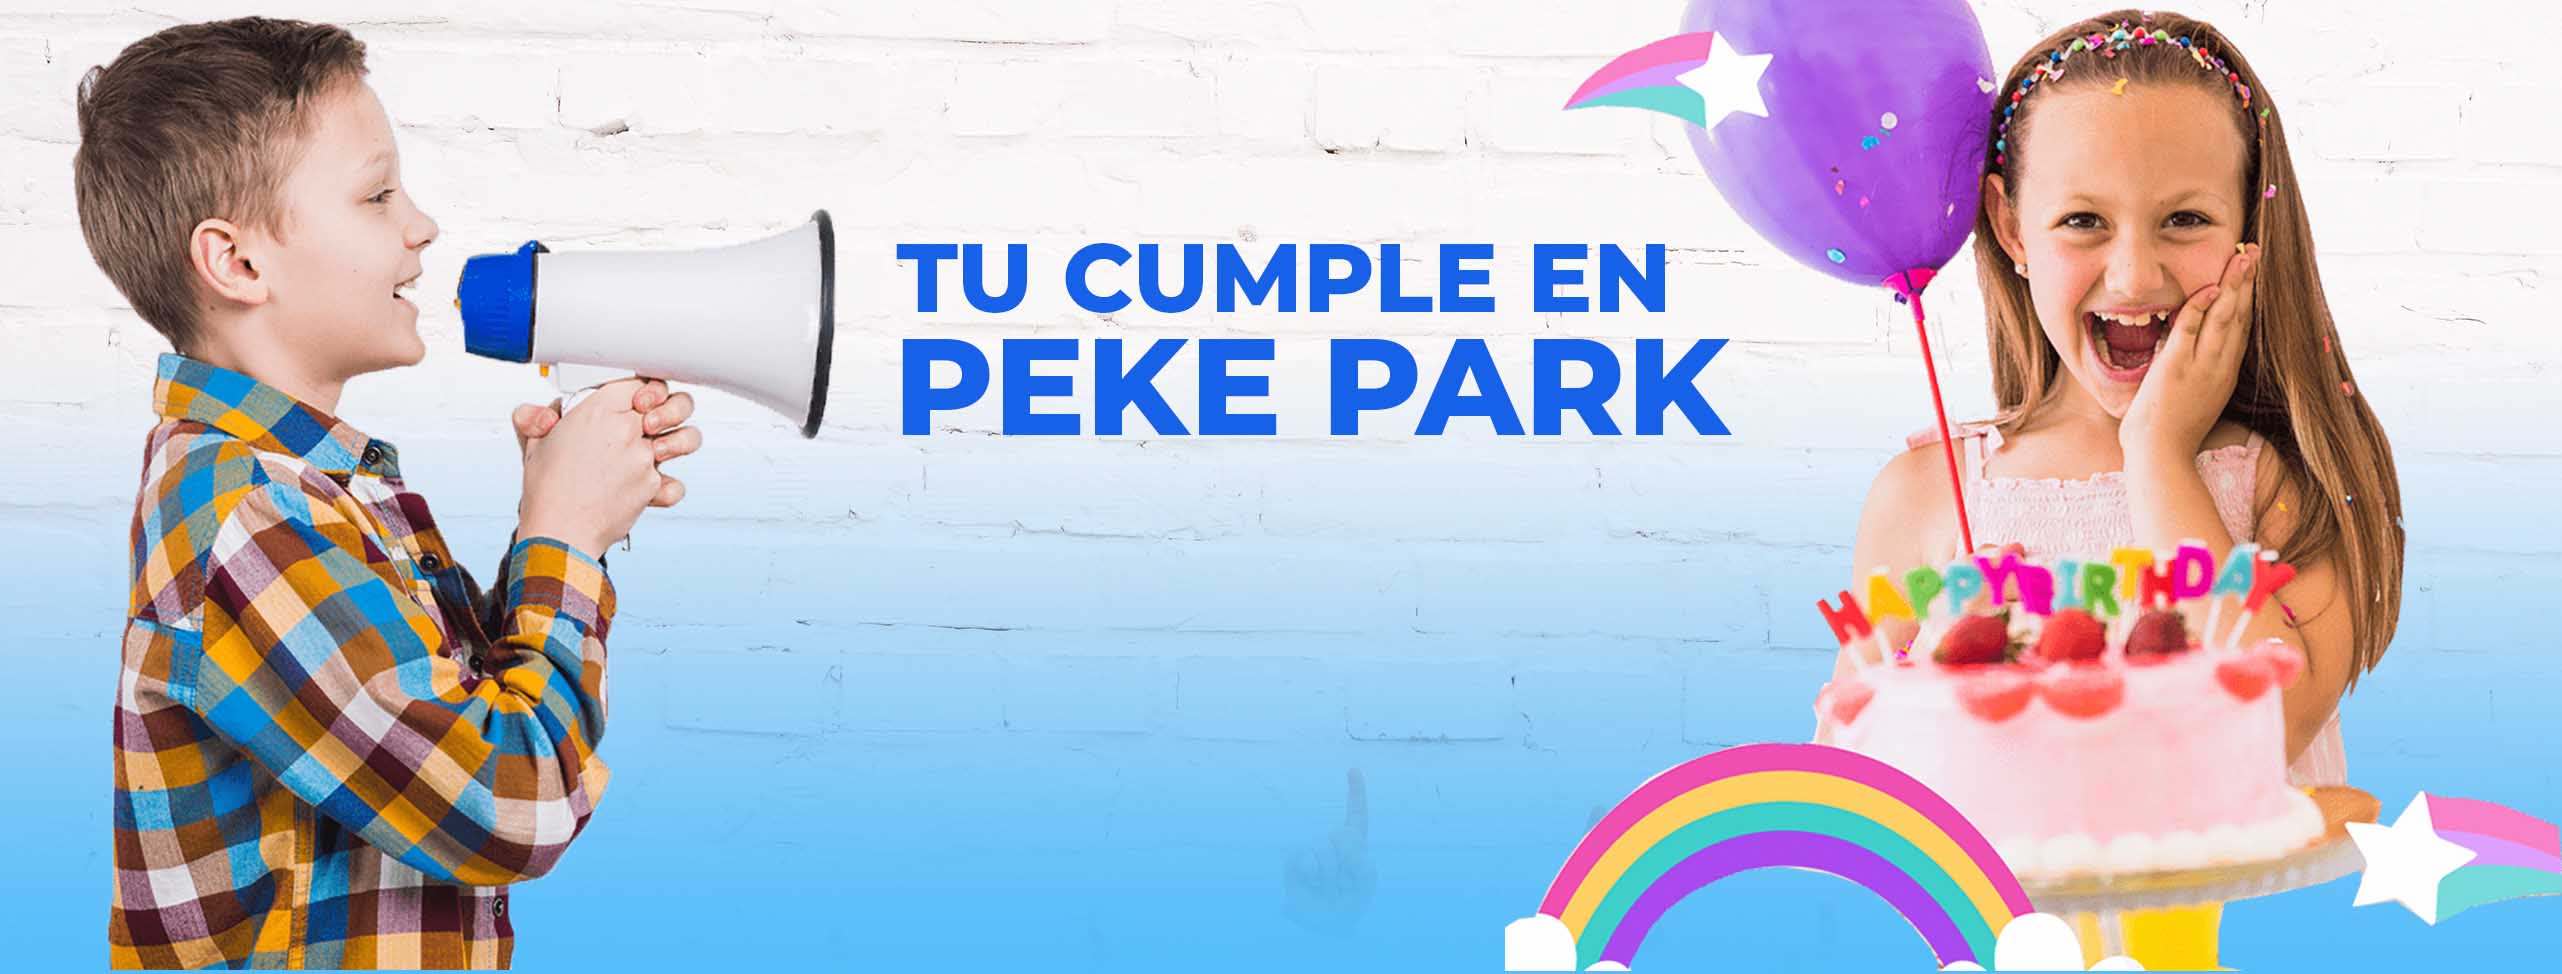 celebra tu cumpleaños en peke park